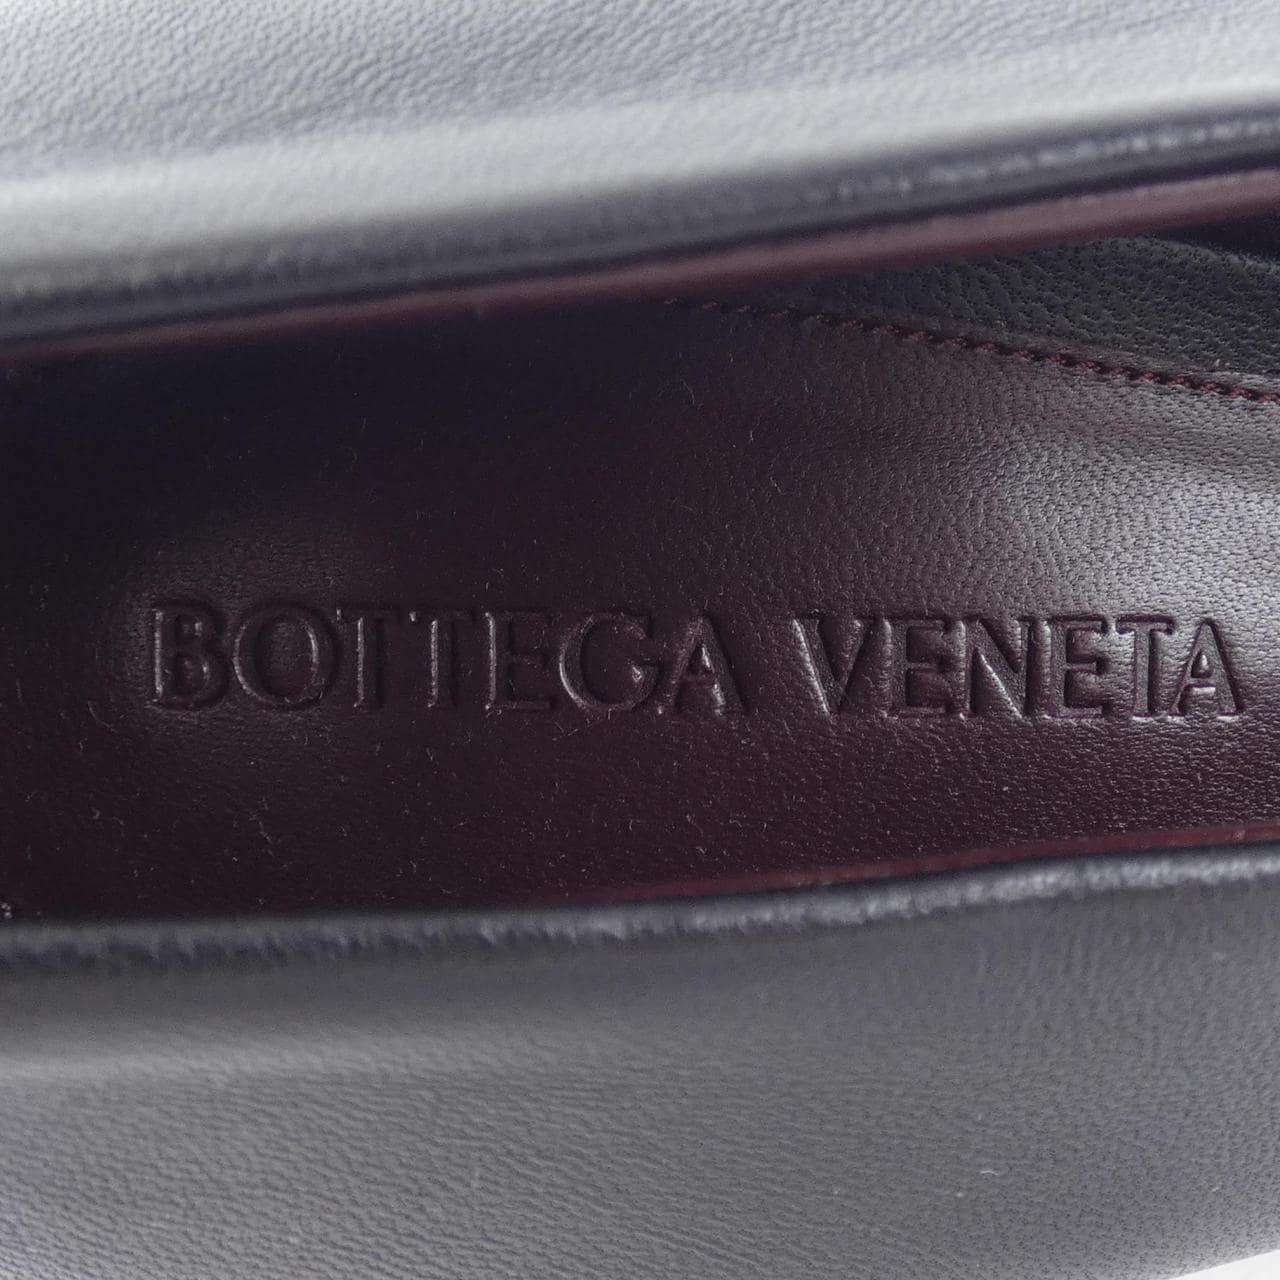 BOTTEGA VENETA Veneta 高跟鞋